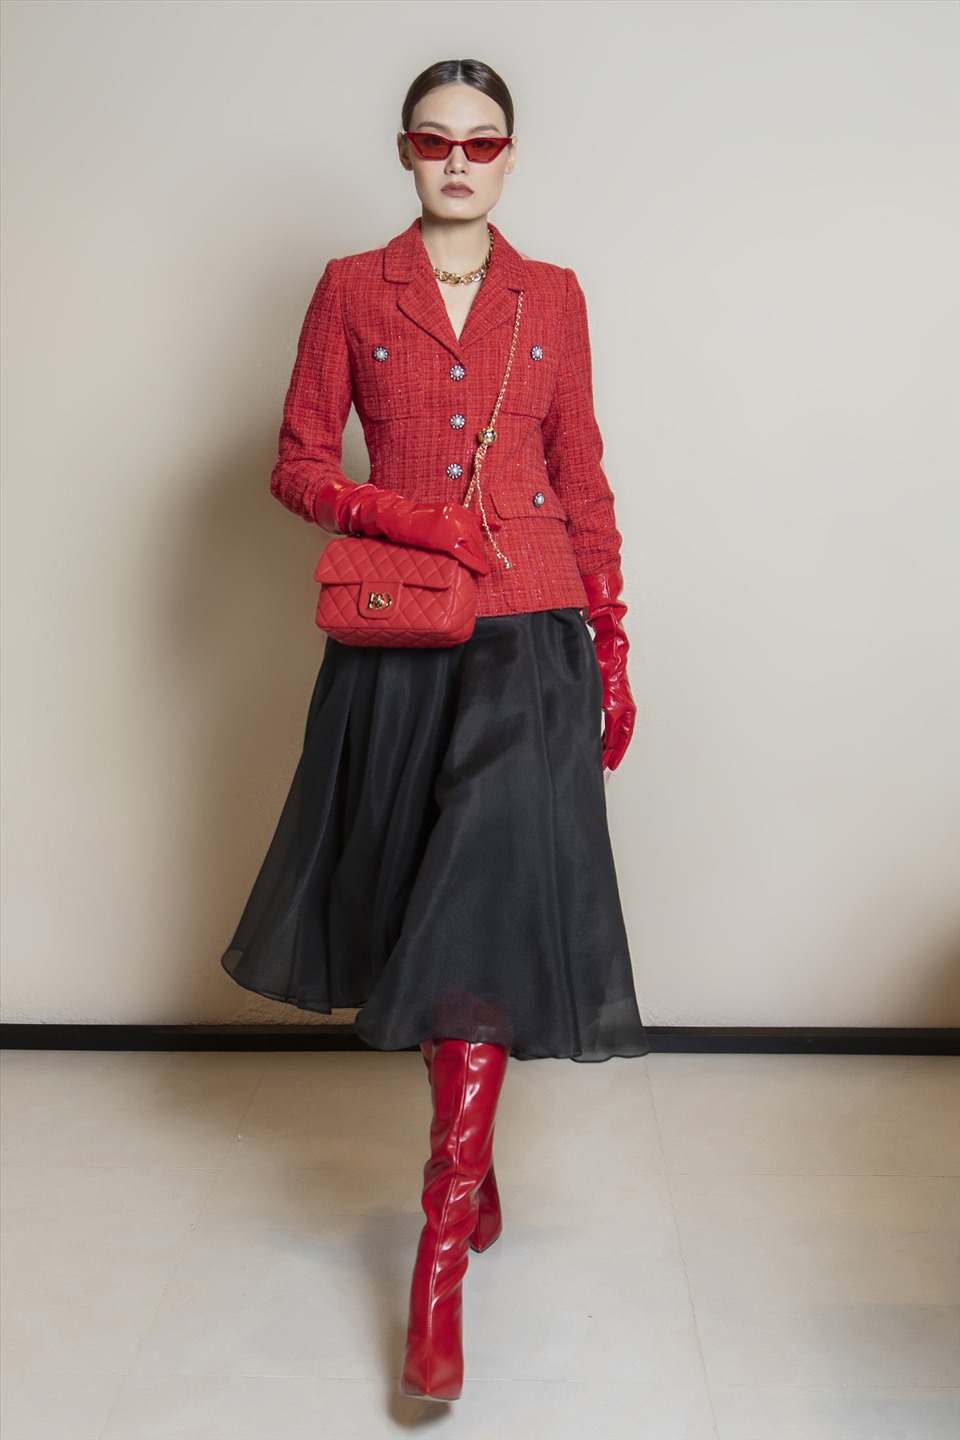 Vẫn là áo khoác dạ tweed nhưng lựa chọn gam màu đỏ đối lập để tạo điểm nhấn rực rỡ cho trang phục. Nàng có thể lựa chọn các phụ kiện cùng màu kèm boot cao cổ để set đồ thêm ấn  tượng.